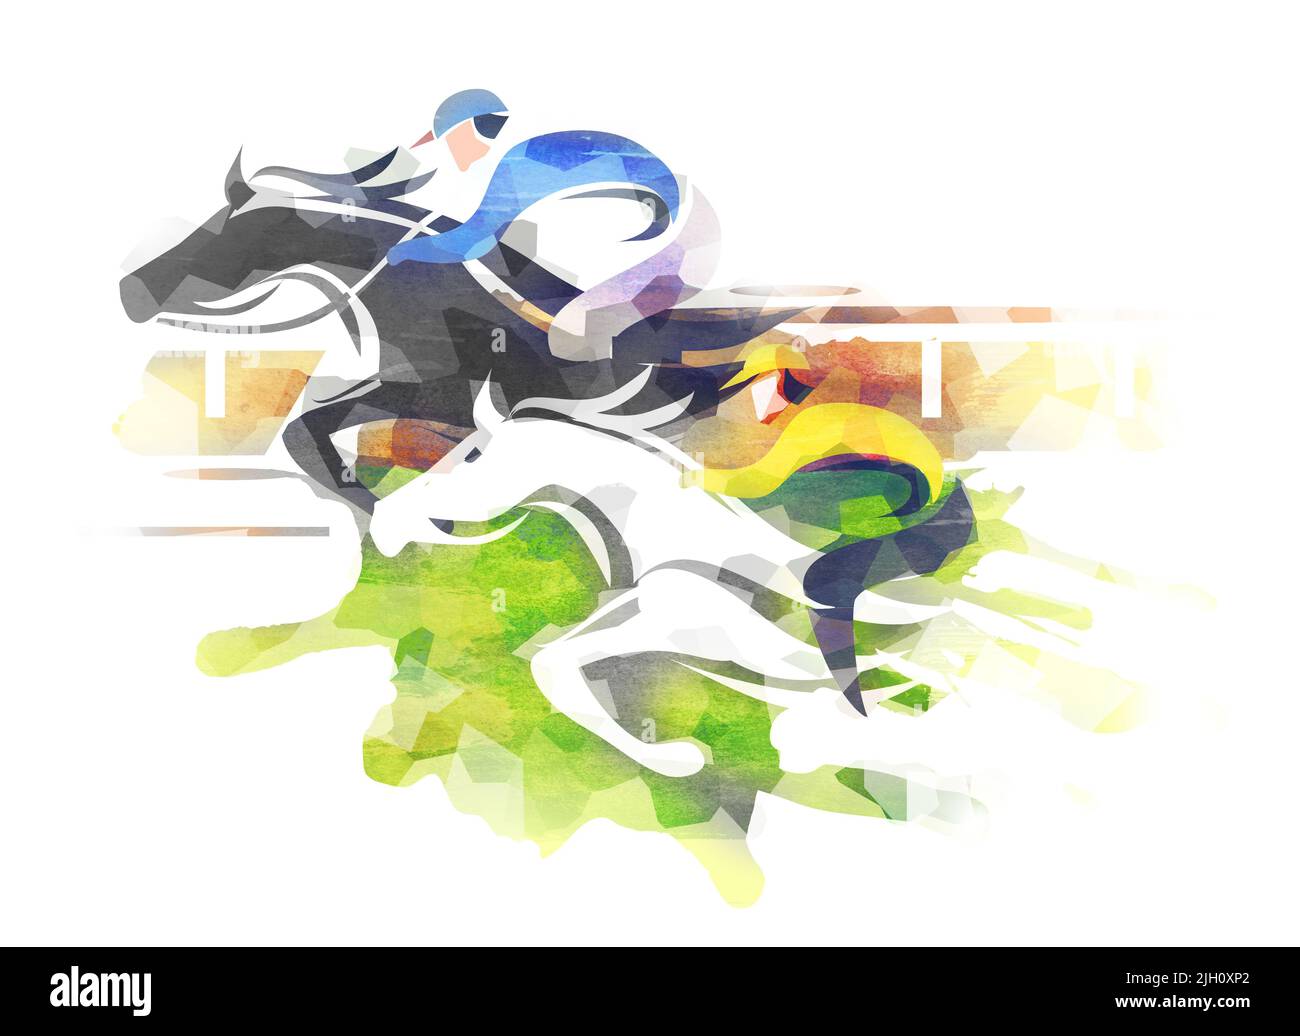 Pferderennen, Wettkampf, Jockeys laufen Action. Eexpressive Illustration von zwei springenden Pferden mit Jockeys bei voller Geschwindigkeit. Imitation von Aquarellen Stockfoto